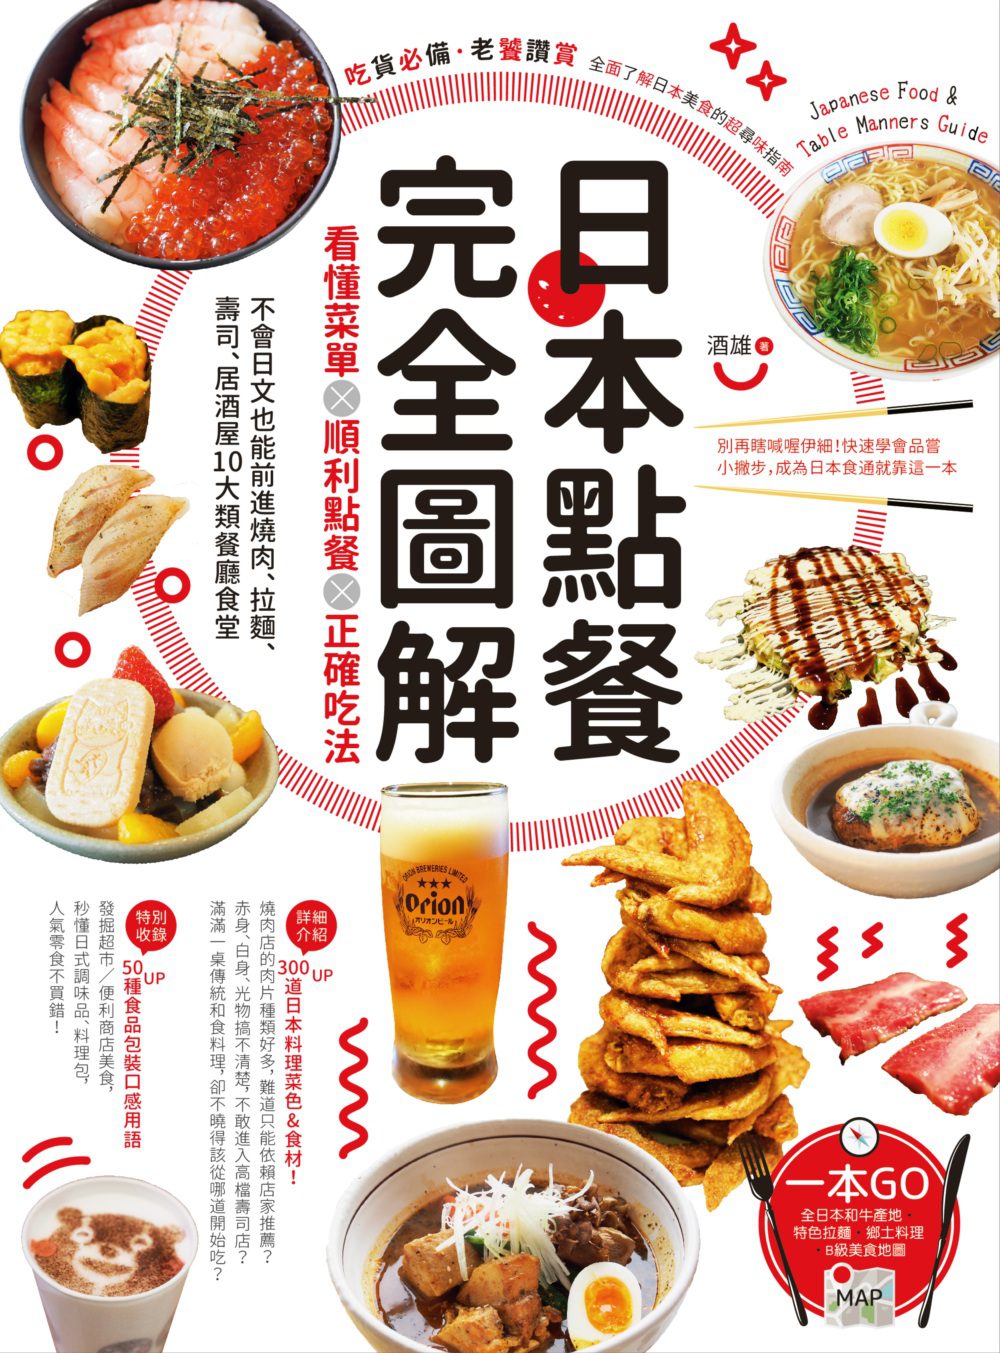 日本點餐完全圖解：看懂菜單╳順利點餐╳正確吃法，不會日文也能前進燒肉、拉麵、壽司、居酒屋10大類餐廳食堂